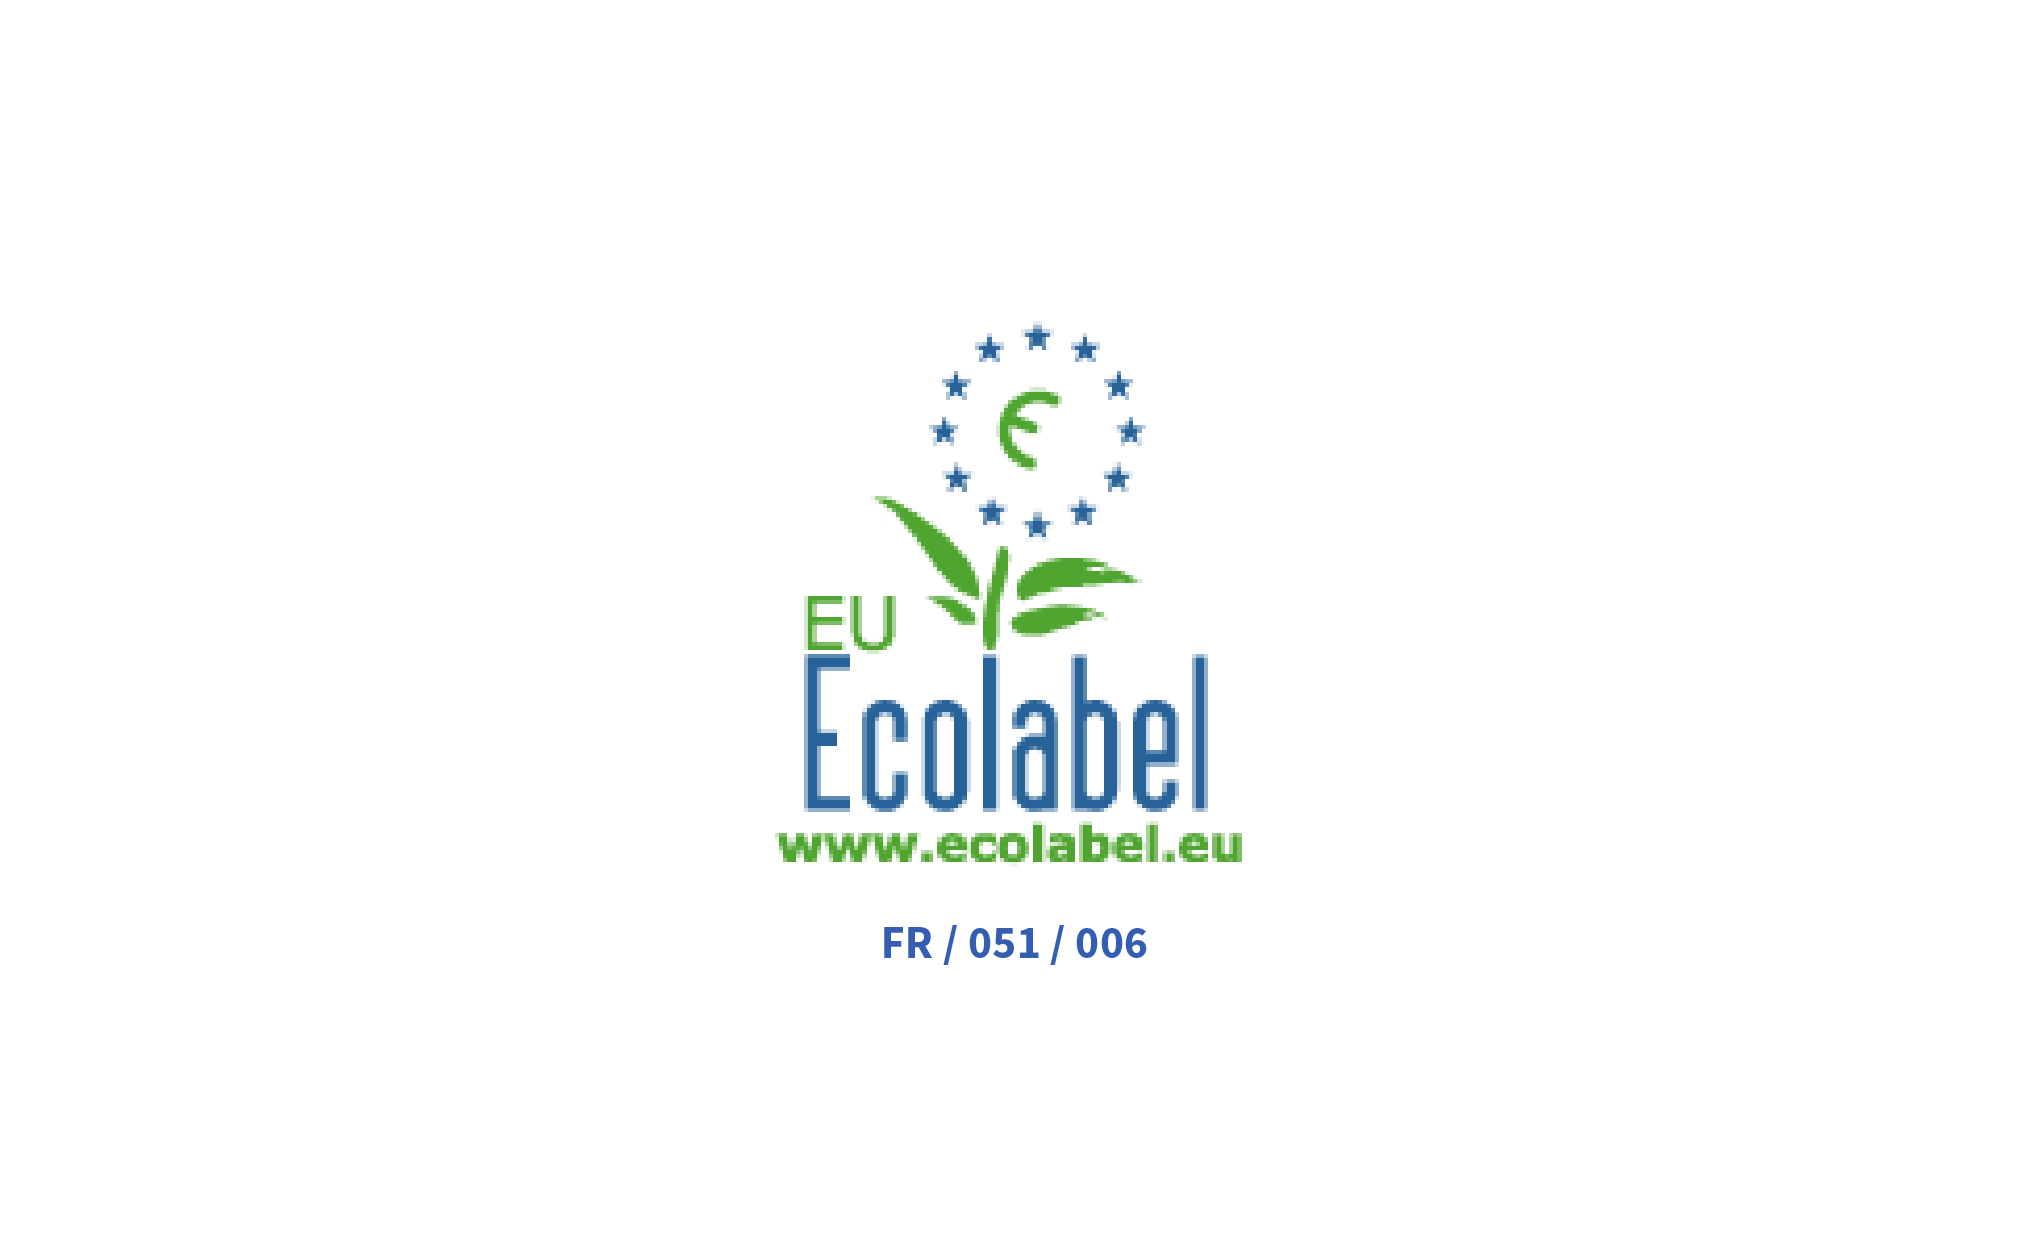 European Union Ecolabel